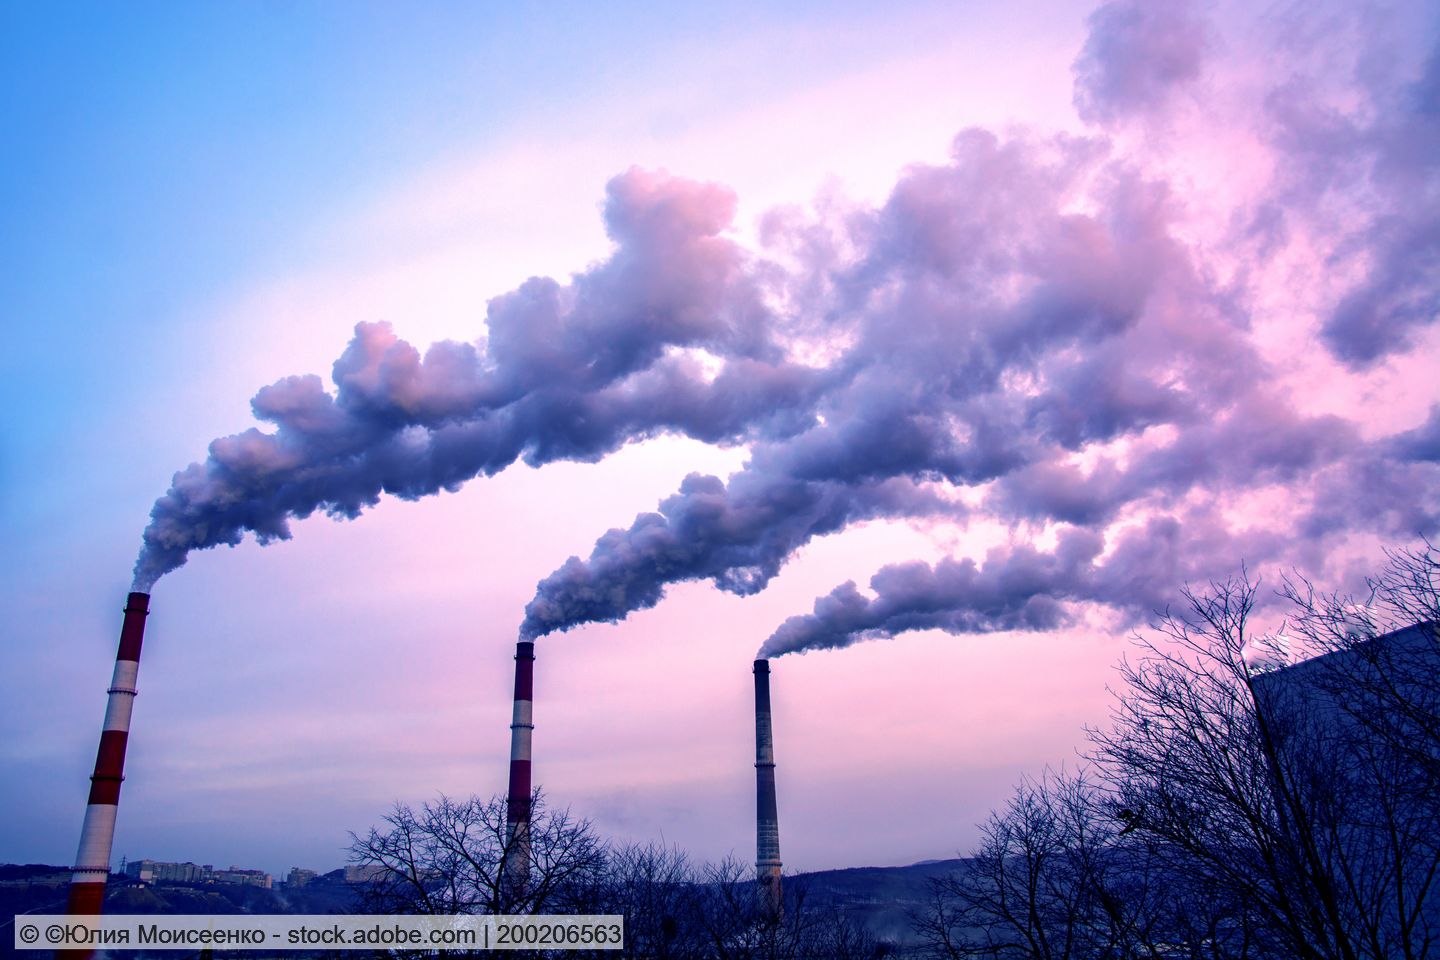 Ecoprog: Müllverbrennung wächst weiter in Europa